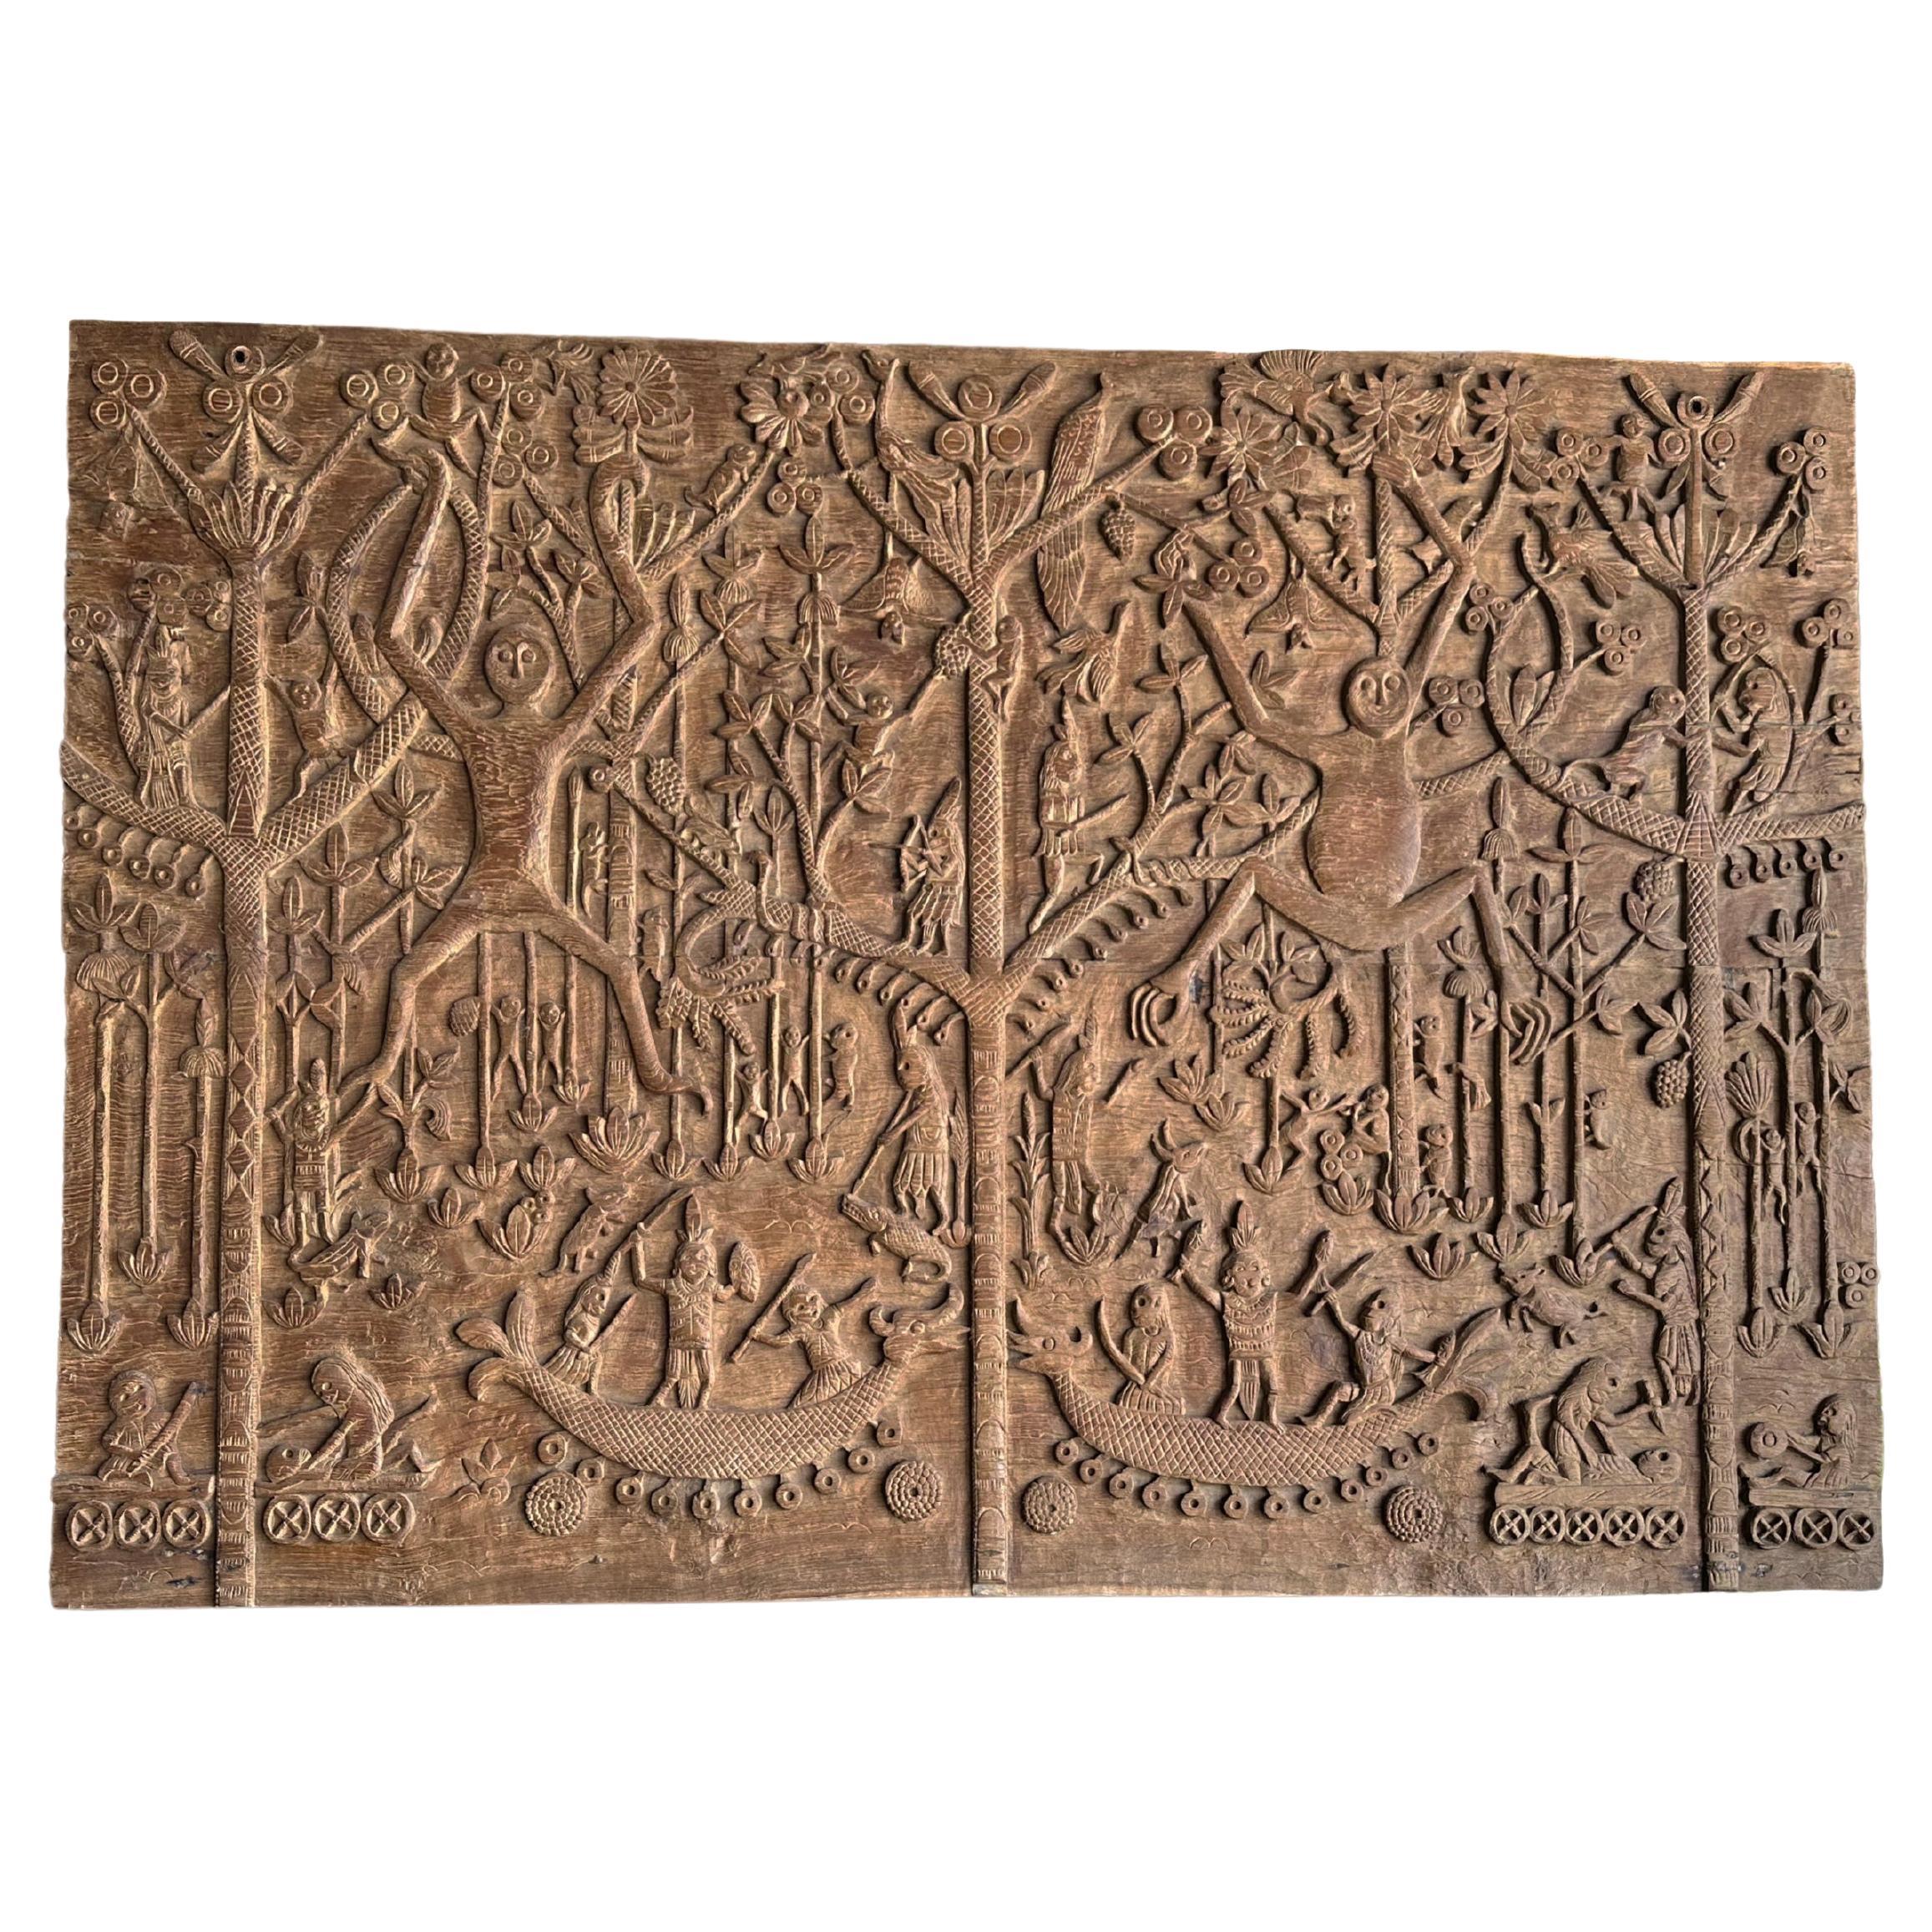 Hand-Carved Teak Wood Sculpture Panel Depicting Dayak Mythology For Sale